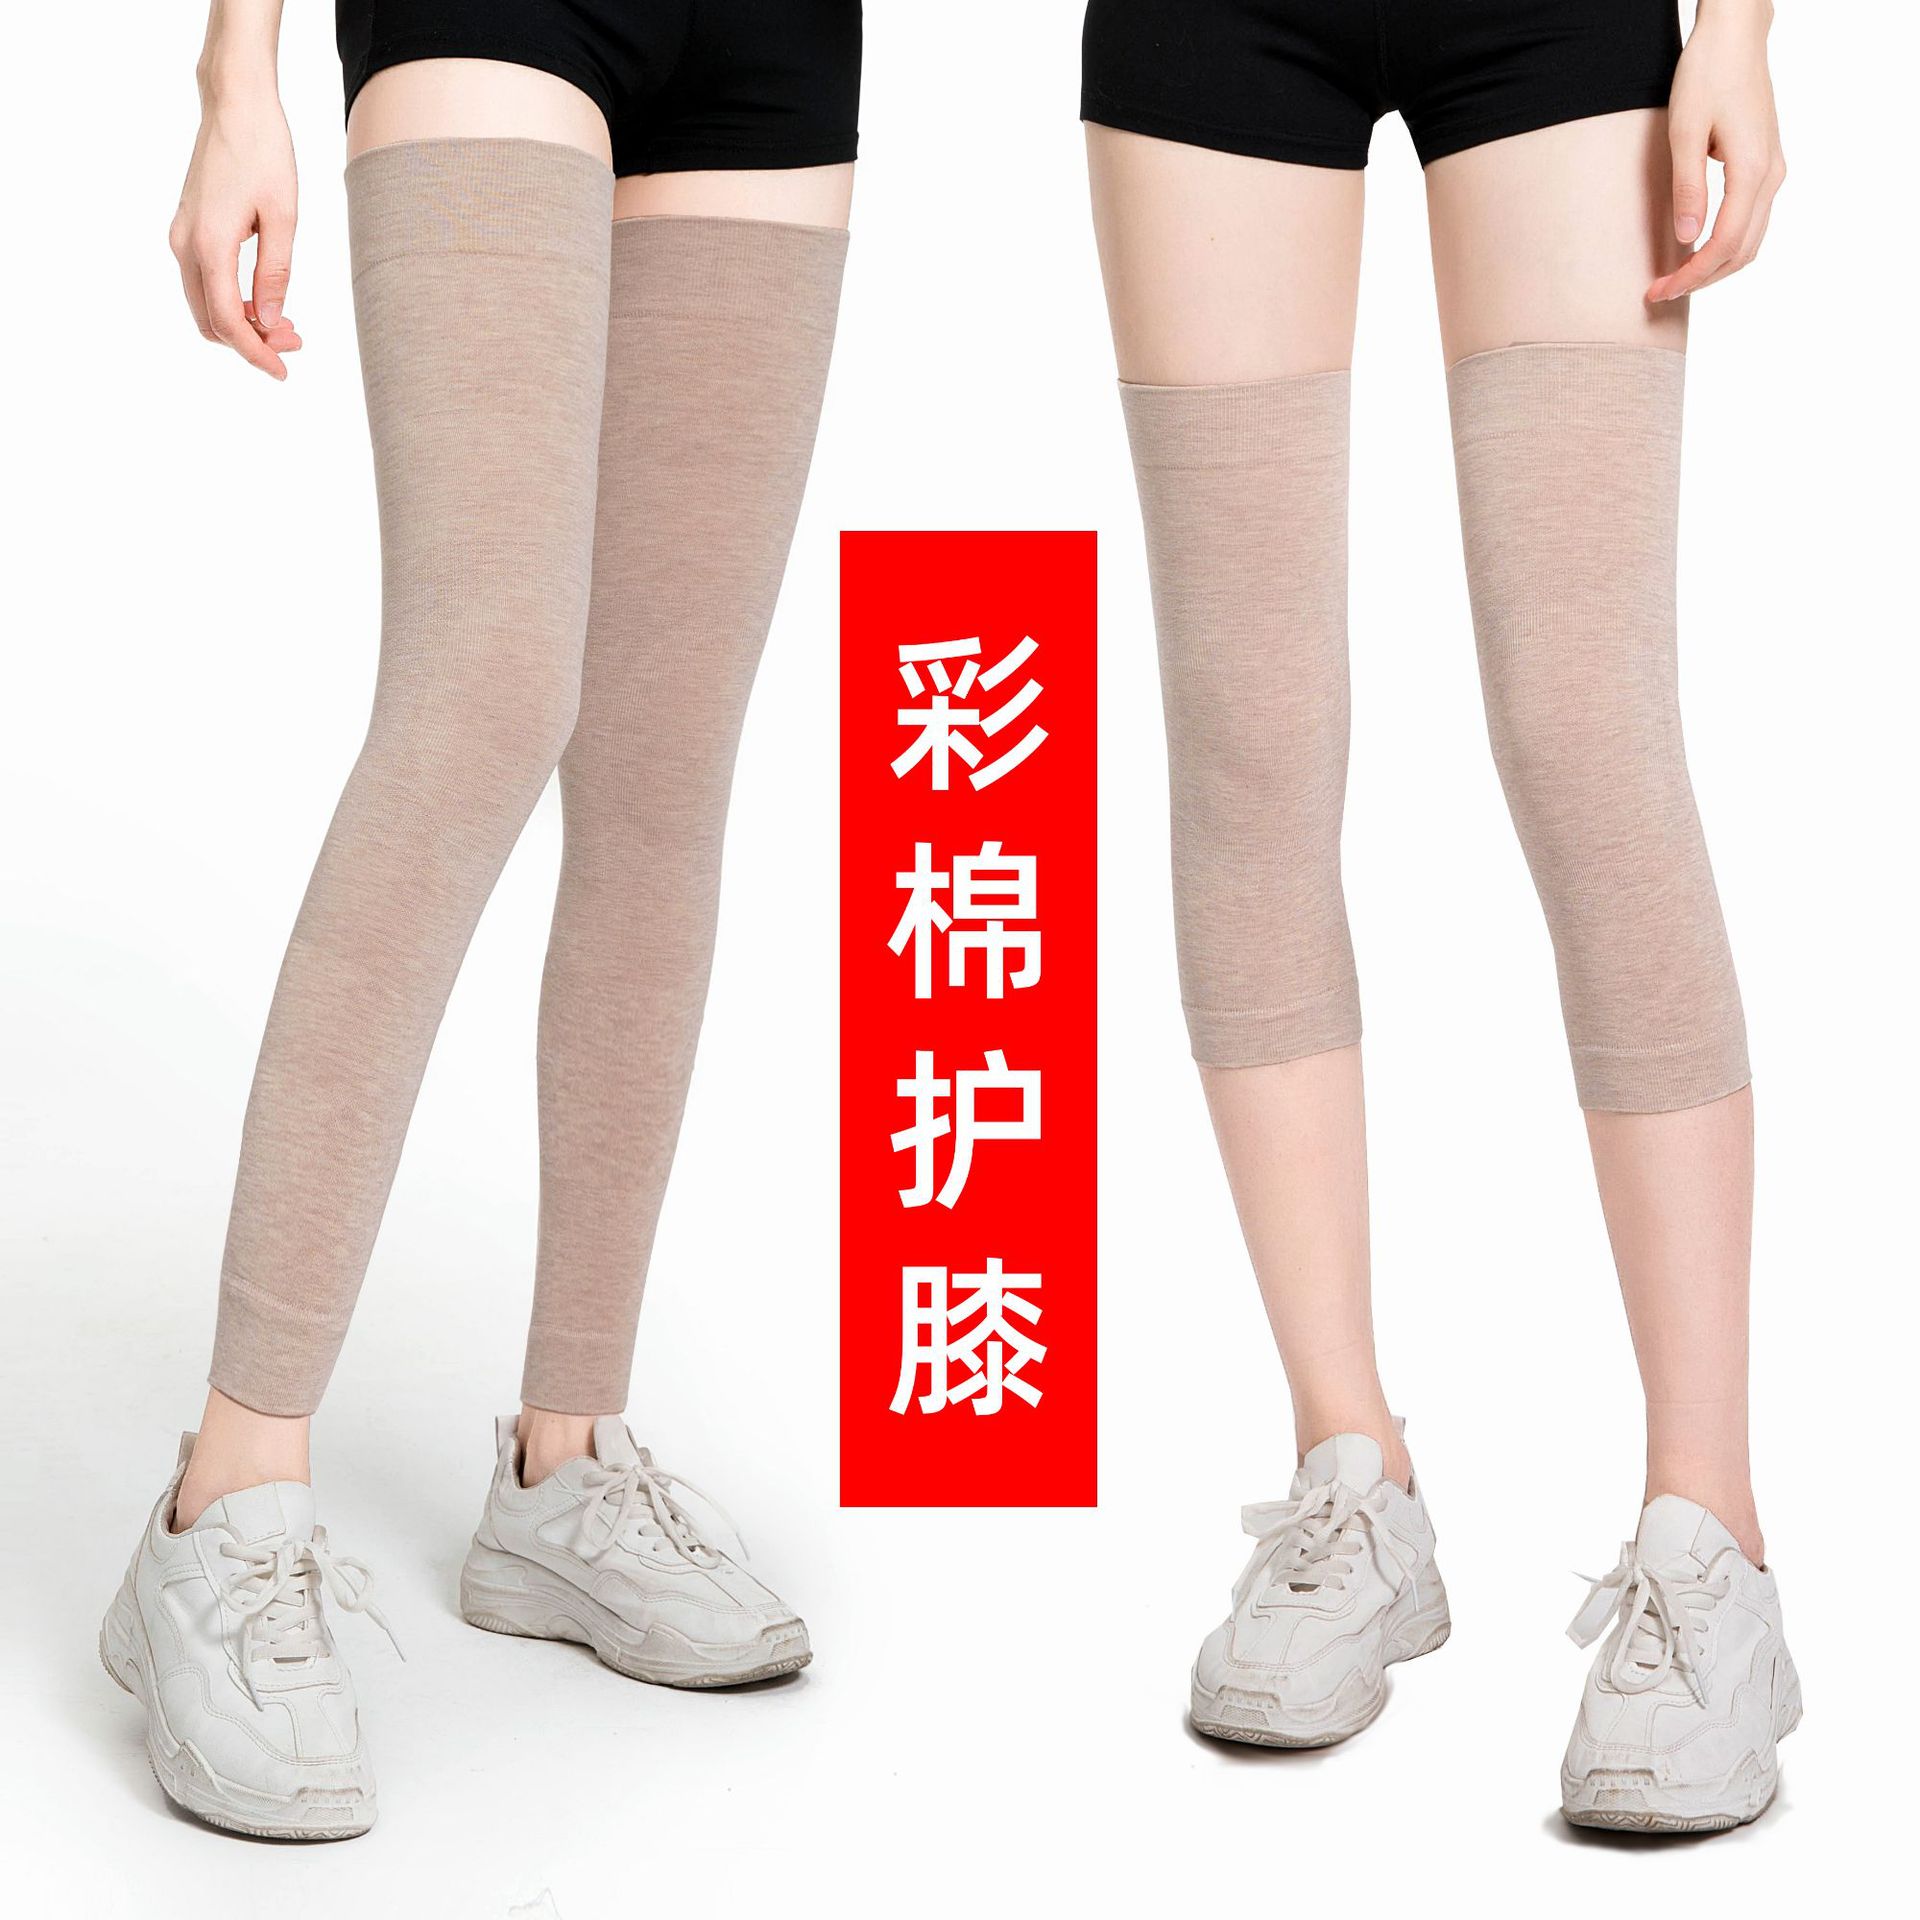 【免運】可開發票 新品熱銷夏季彩棉保暖護膝加長運動護膝 護膝套 運動護具熱銷